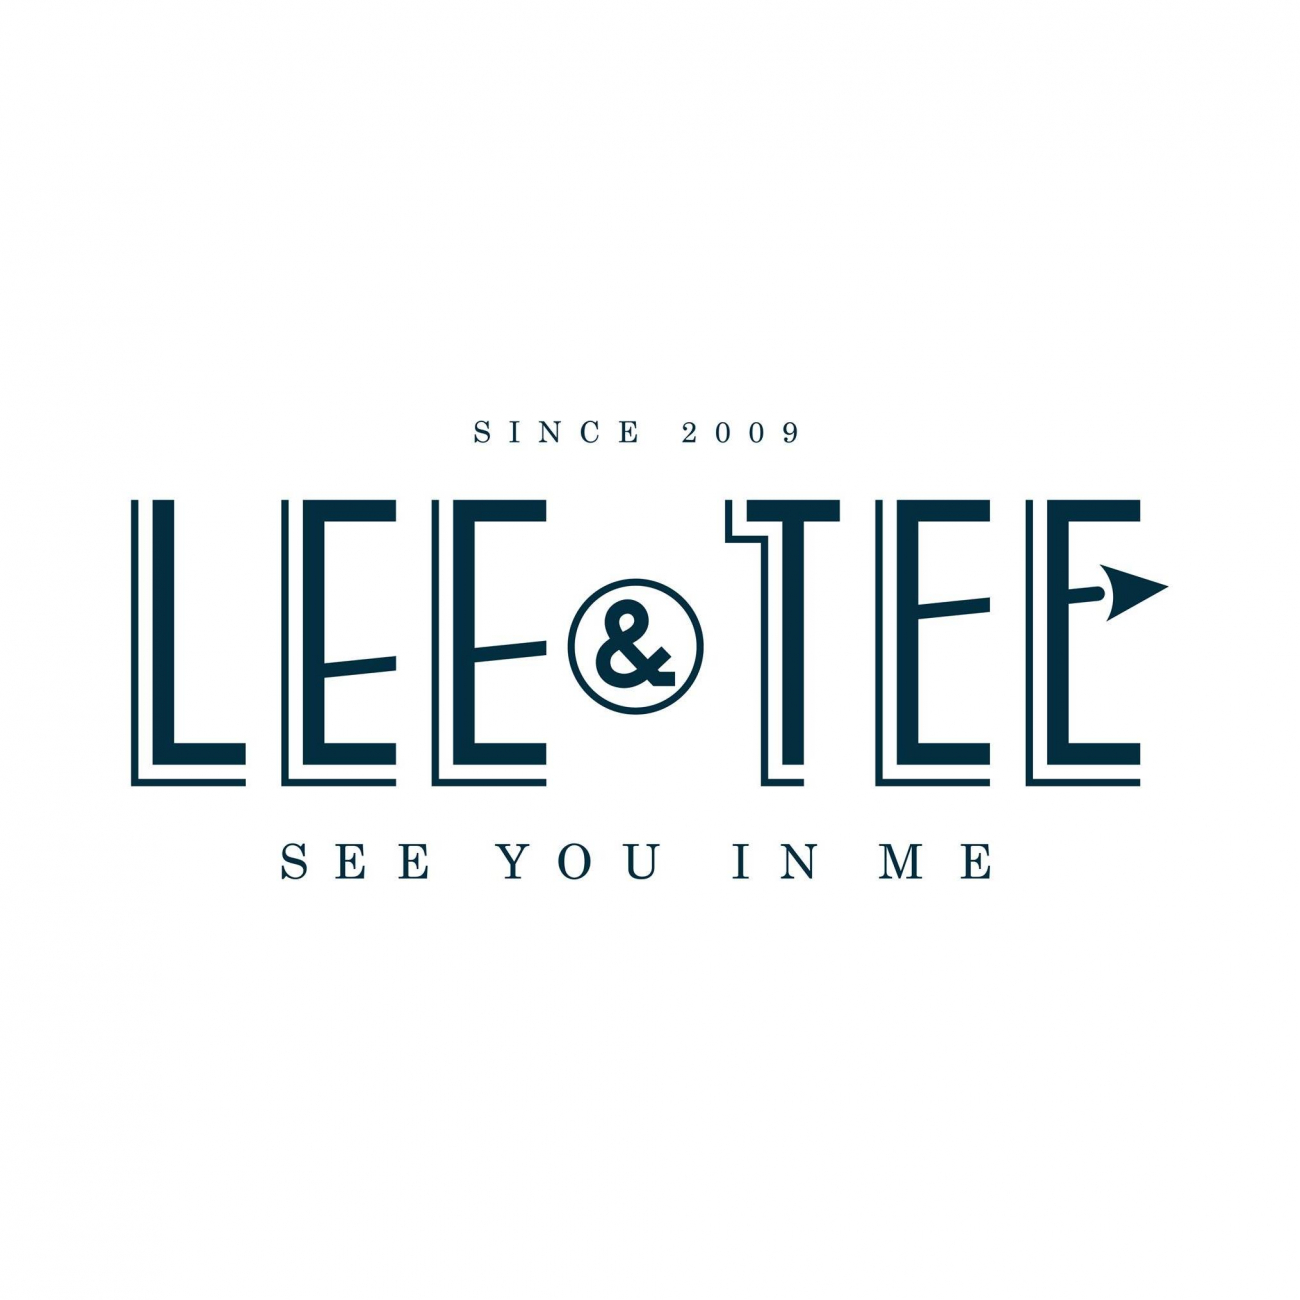 Cửa hàng túi xách Lee&Tee; CMT8 - Q.5